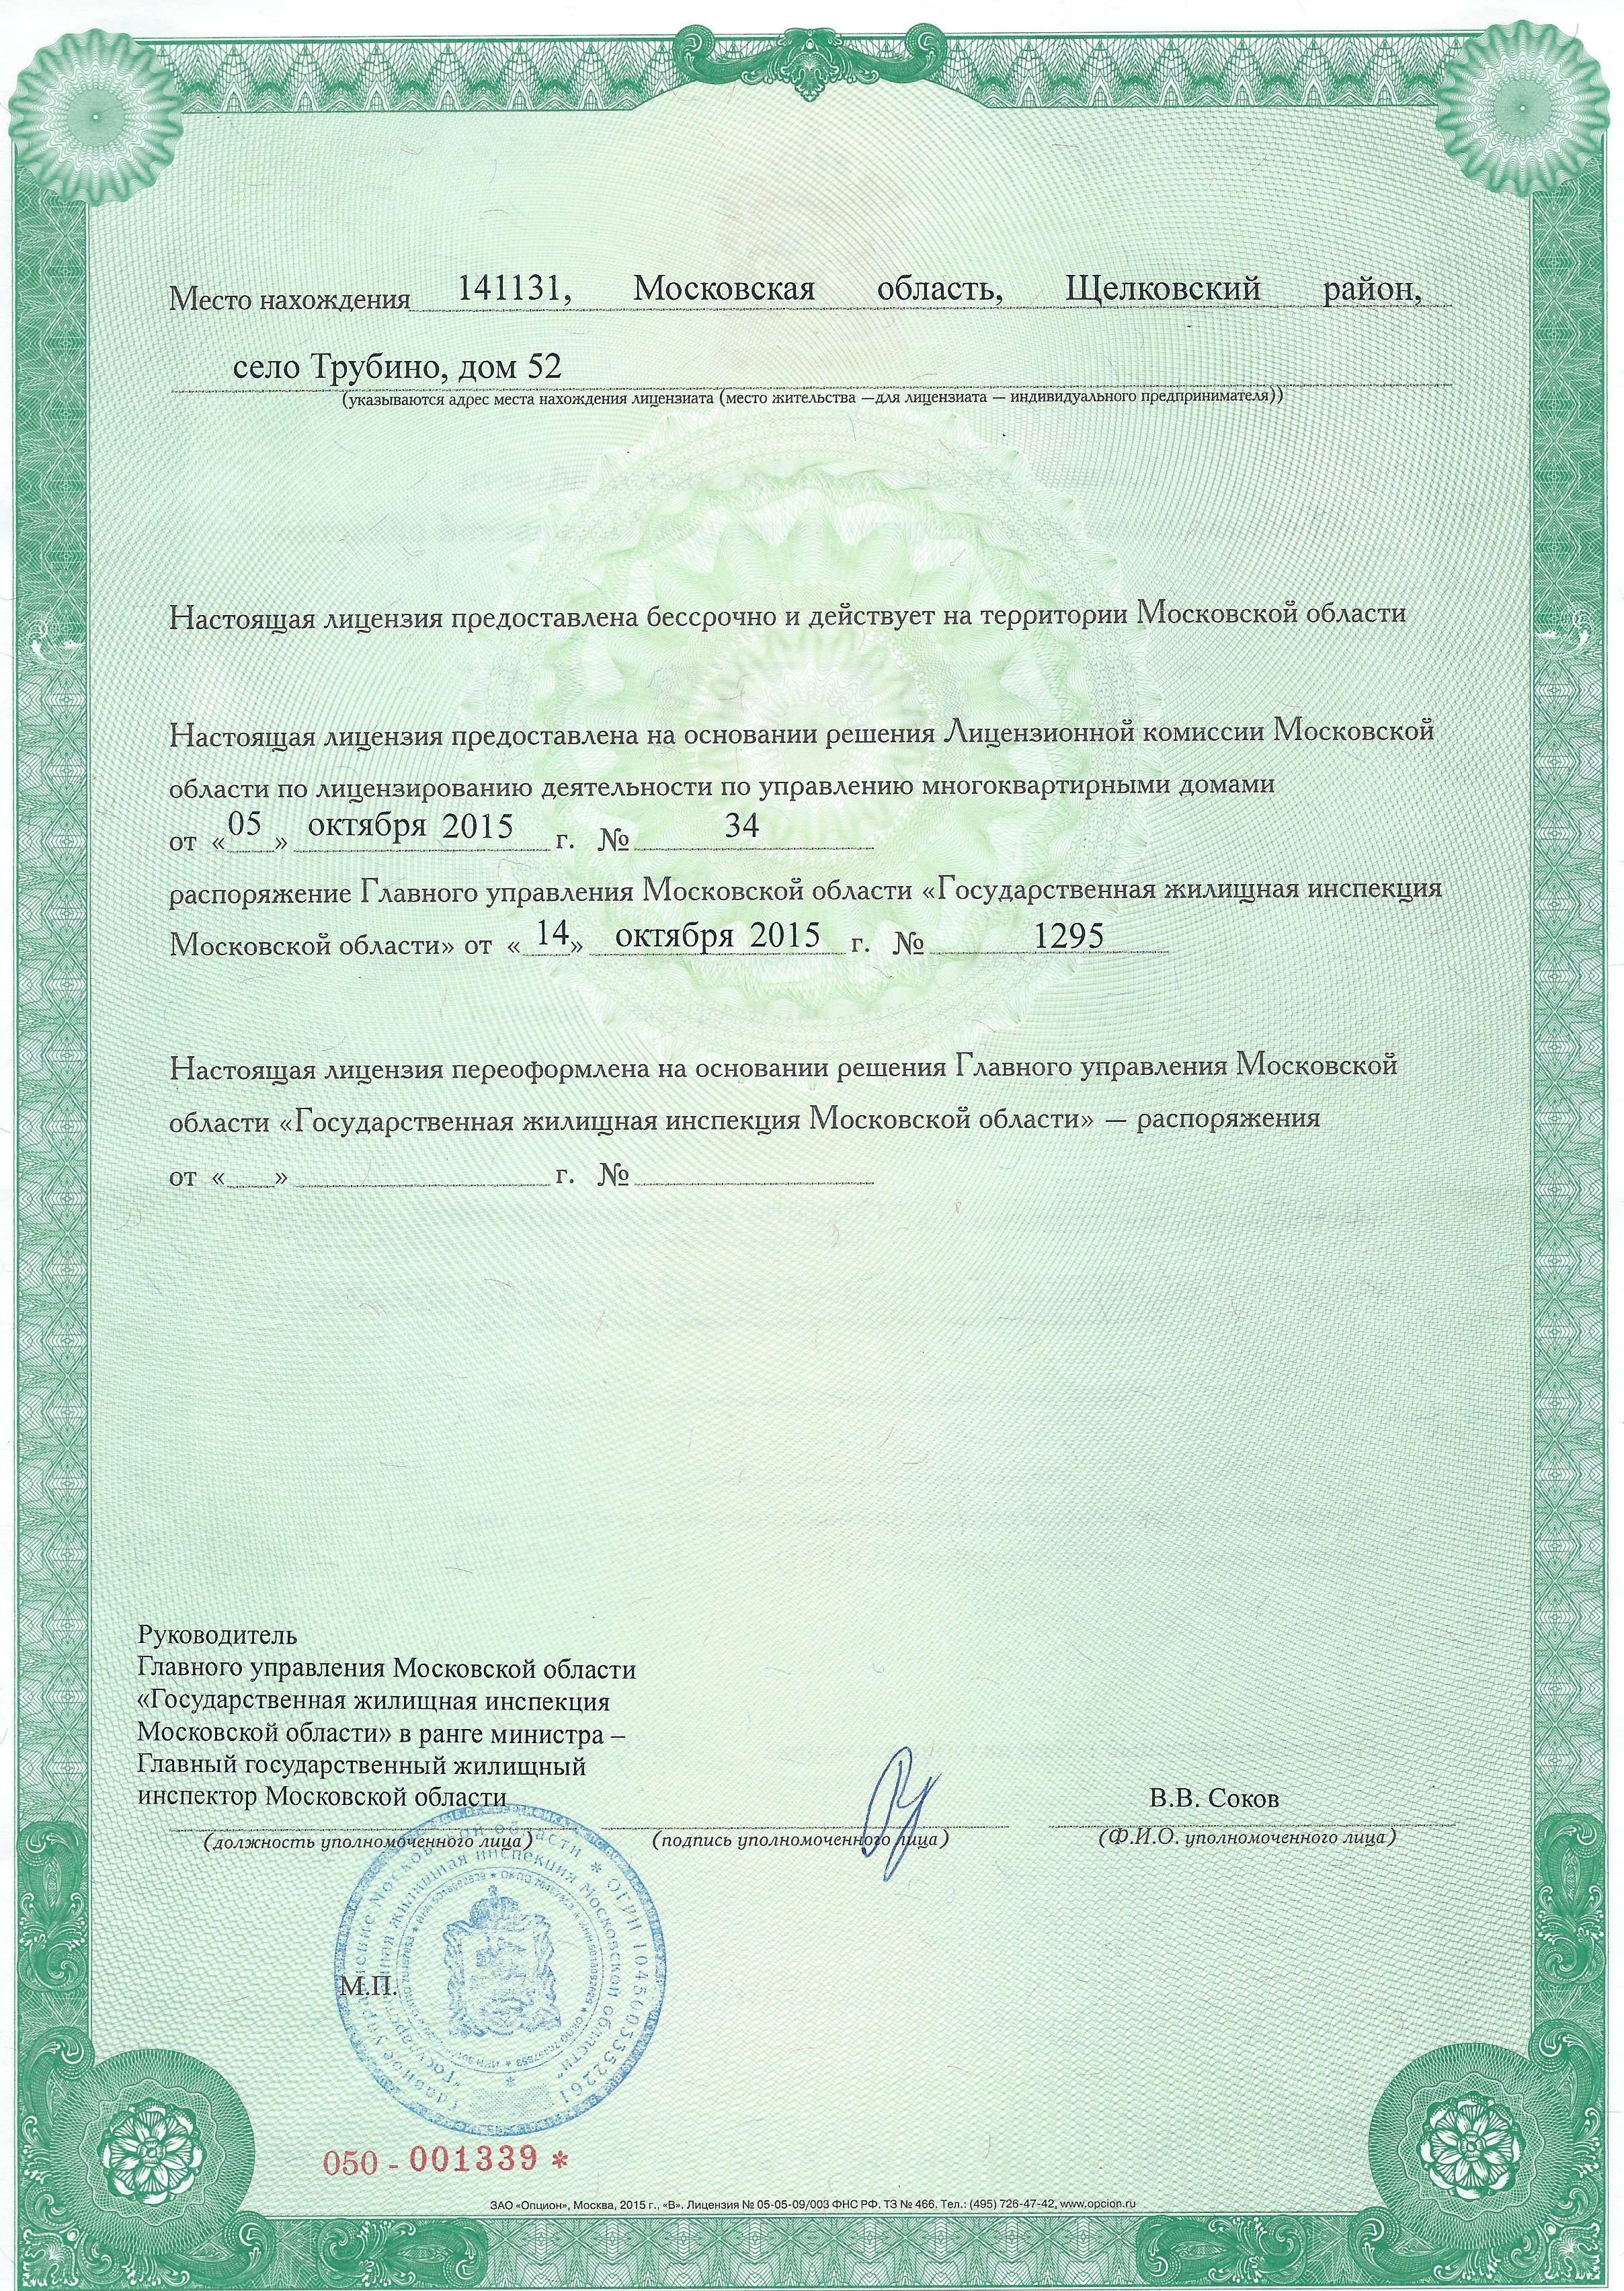 Лицензия на управление МКД №Лицензия страница  от 14.10.2015